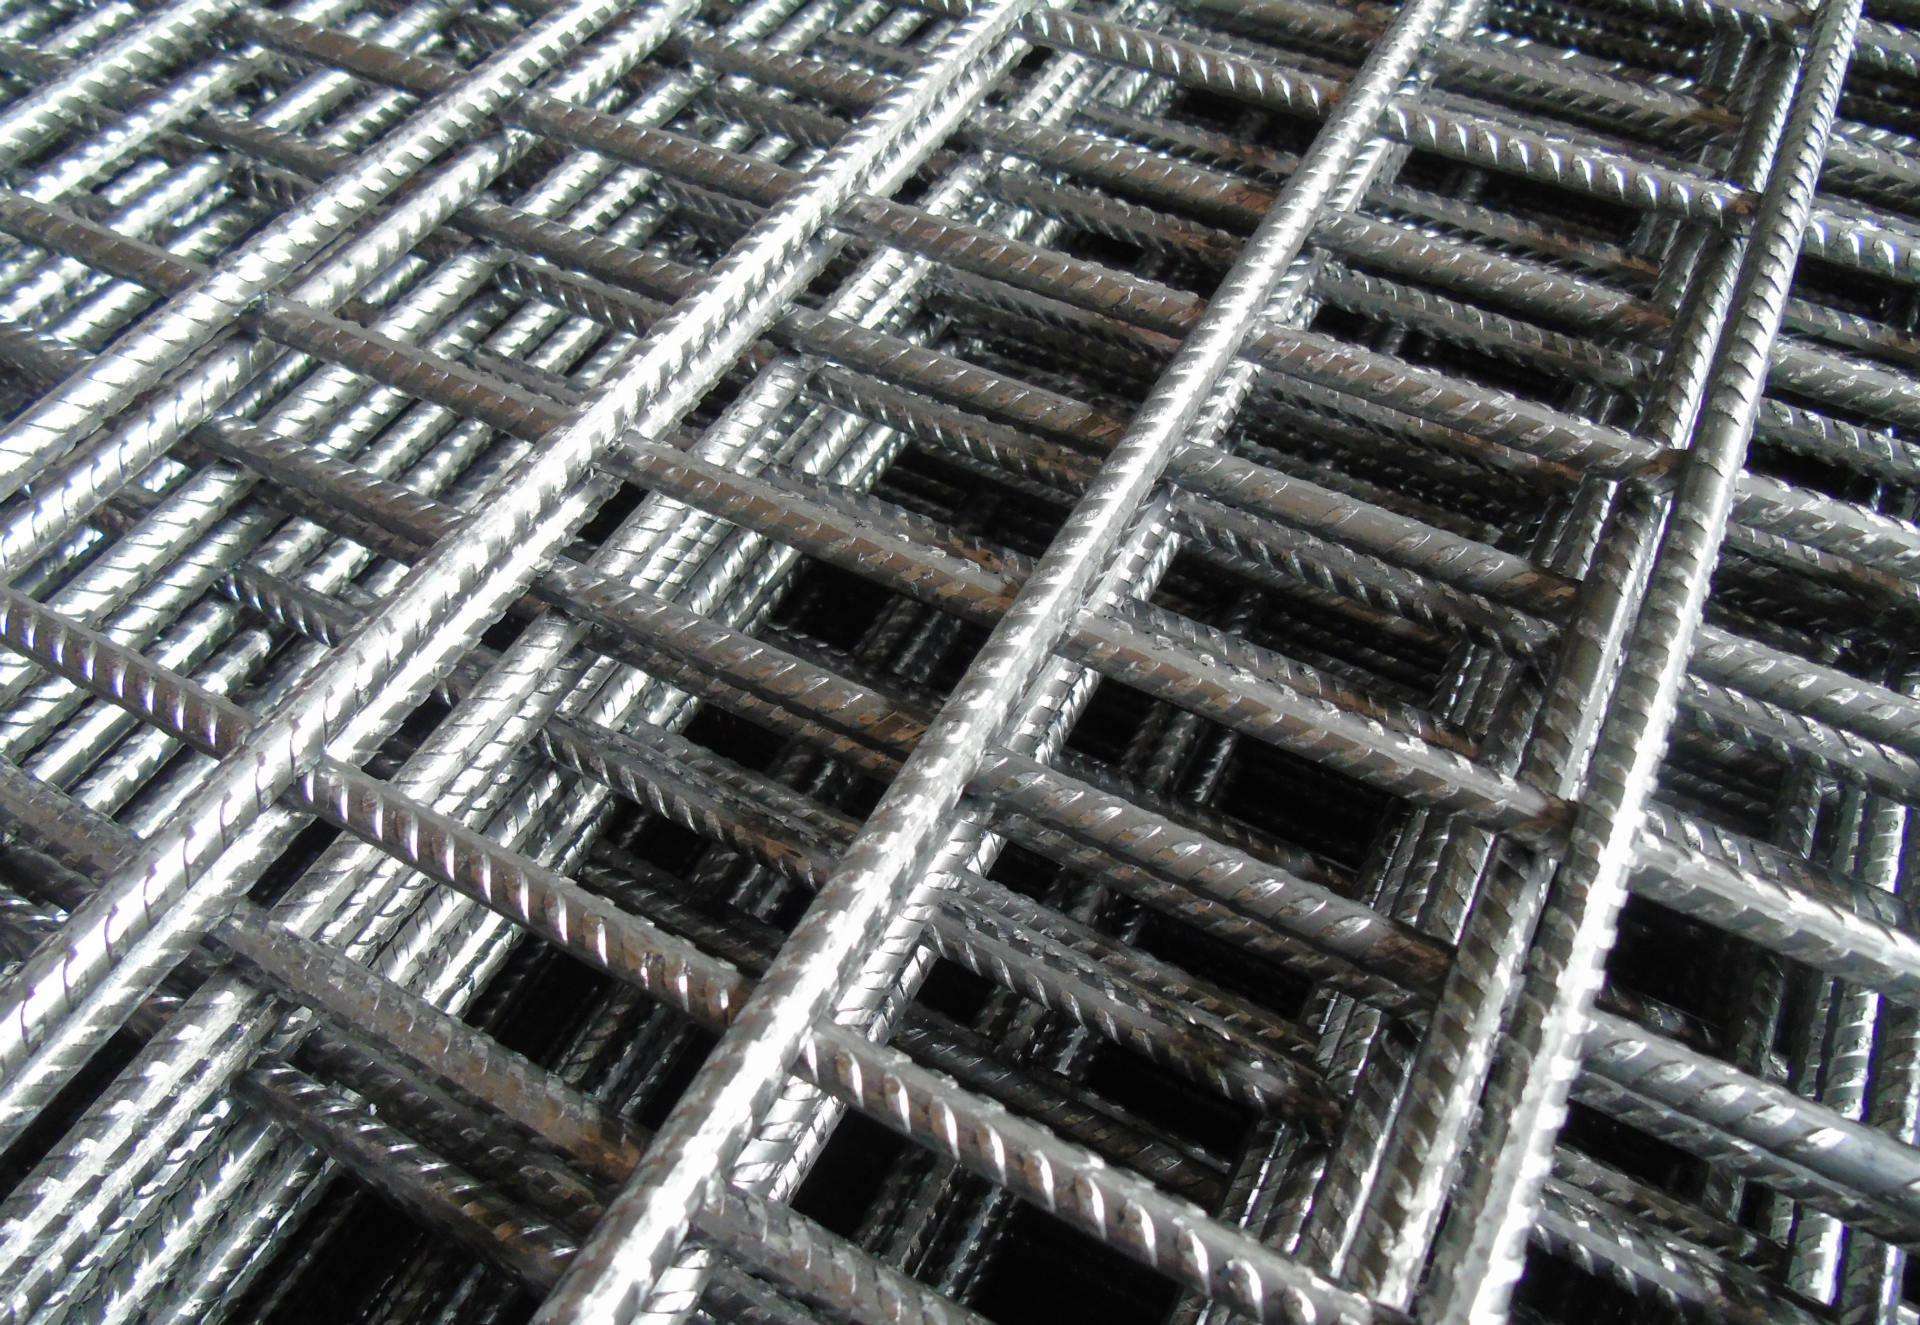 6.5网片南宁焊接钢筋网片订做焊接网片生产加工厂家